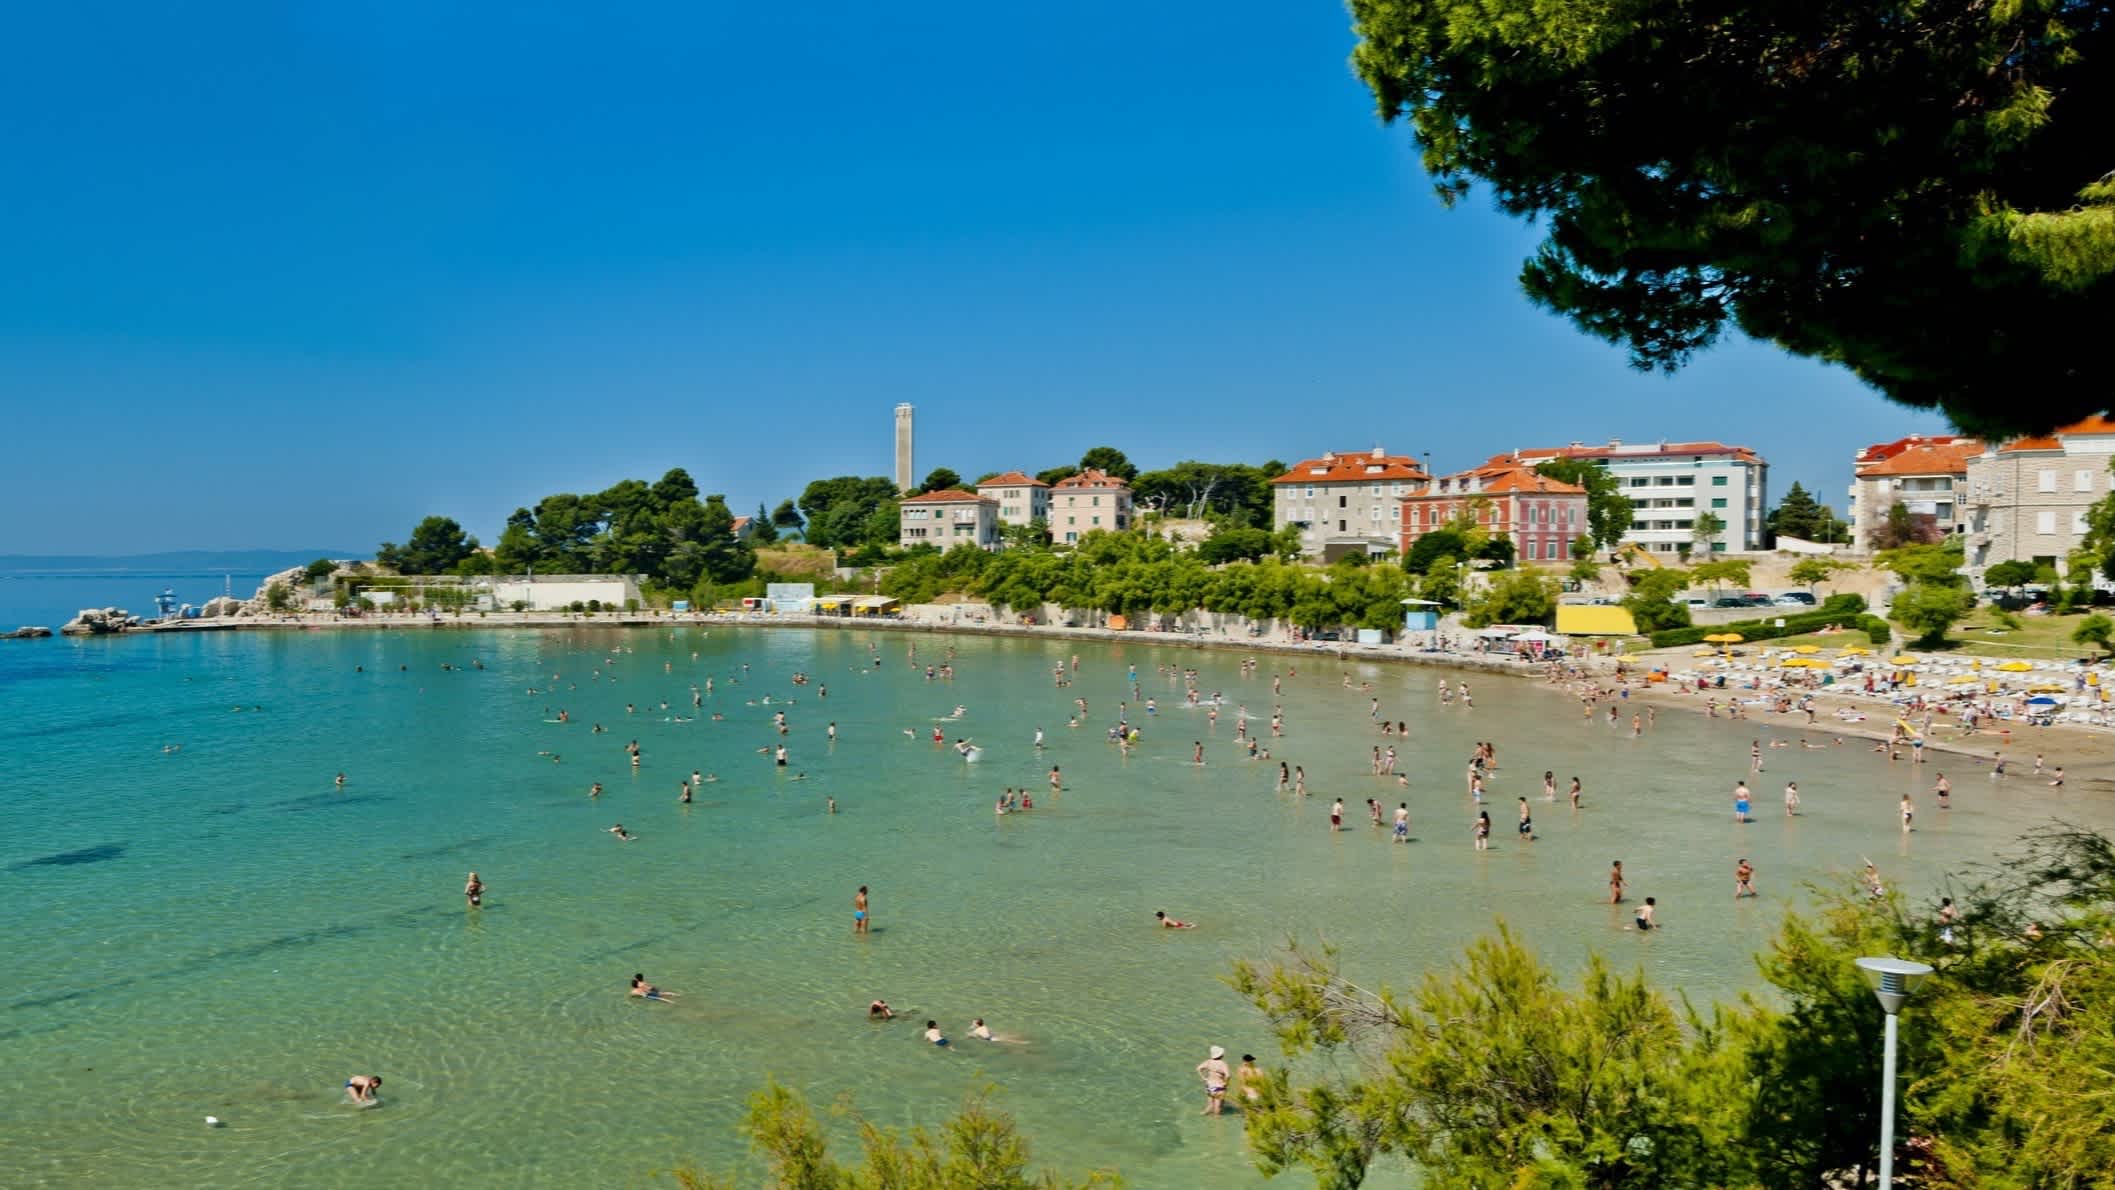 Der Strand von Bačvice, Split, Kroatien mit Blick auf die mit Menschen gefüllte Bucht sowie Häusern im Bild.